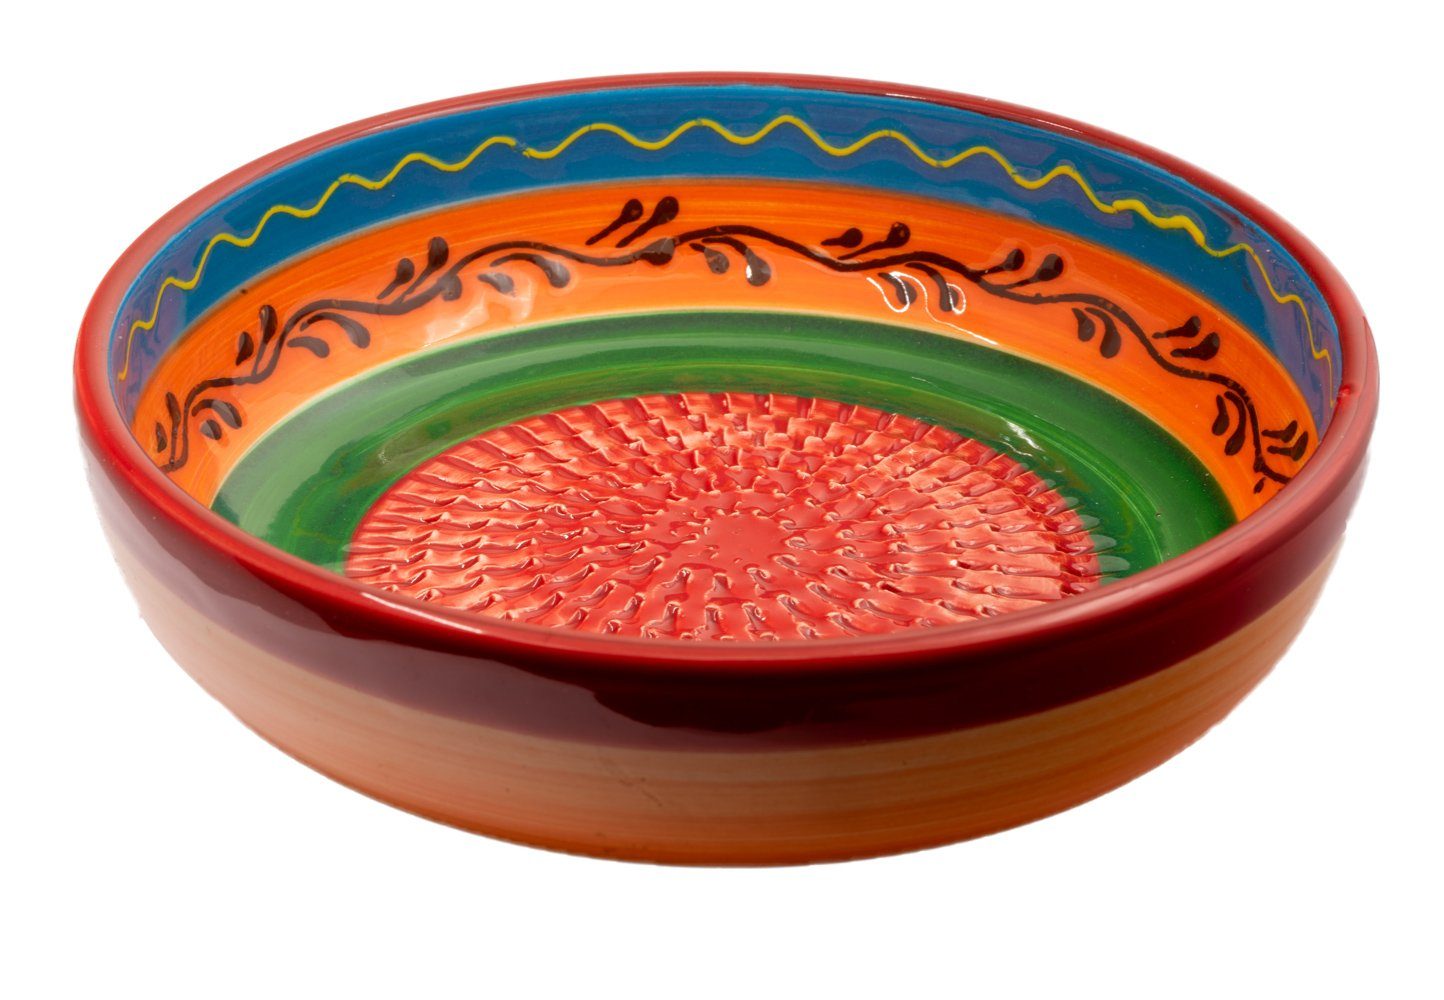 Kaladia Multireibe Reibeschüssel in Rot/Orange/Grün, Keramik, handbemalte Küchenreibe - Made in Spain